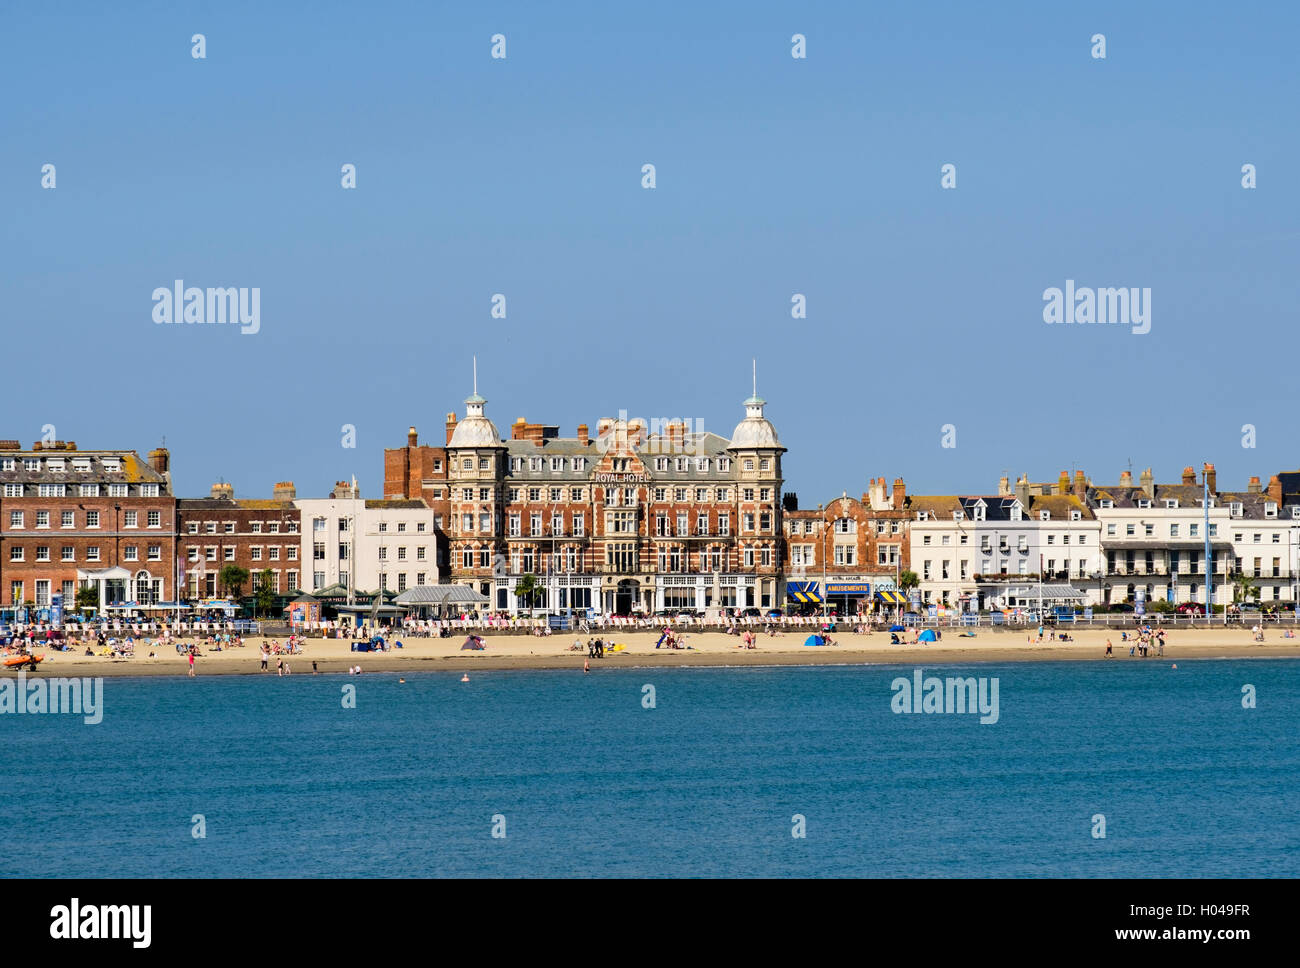 Hôtel Royal et d'arcade sur front de mer de partout à la fin de l'été soleil dans South coast resort de Weymouth Dorset England UK Banque D'Images